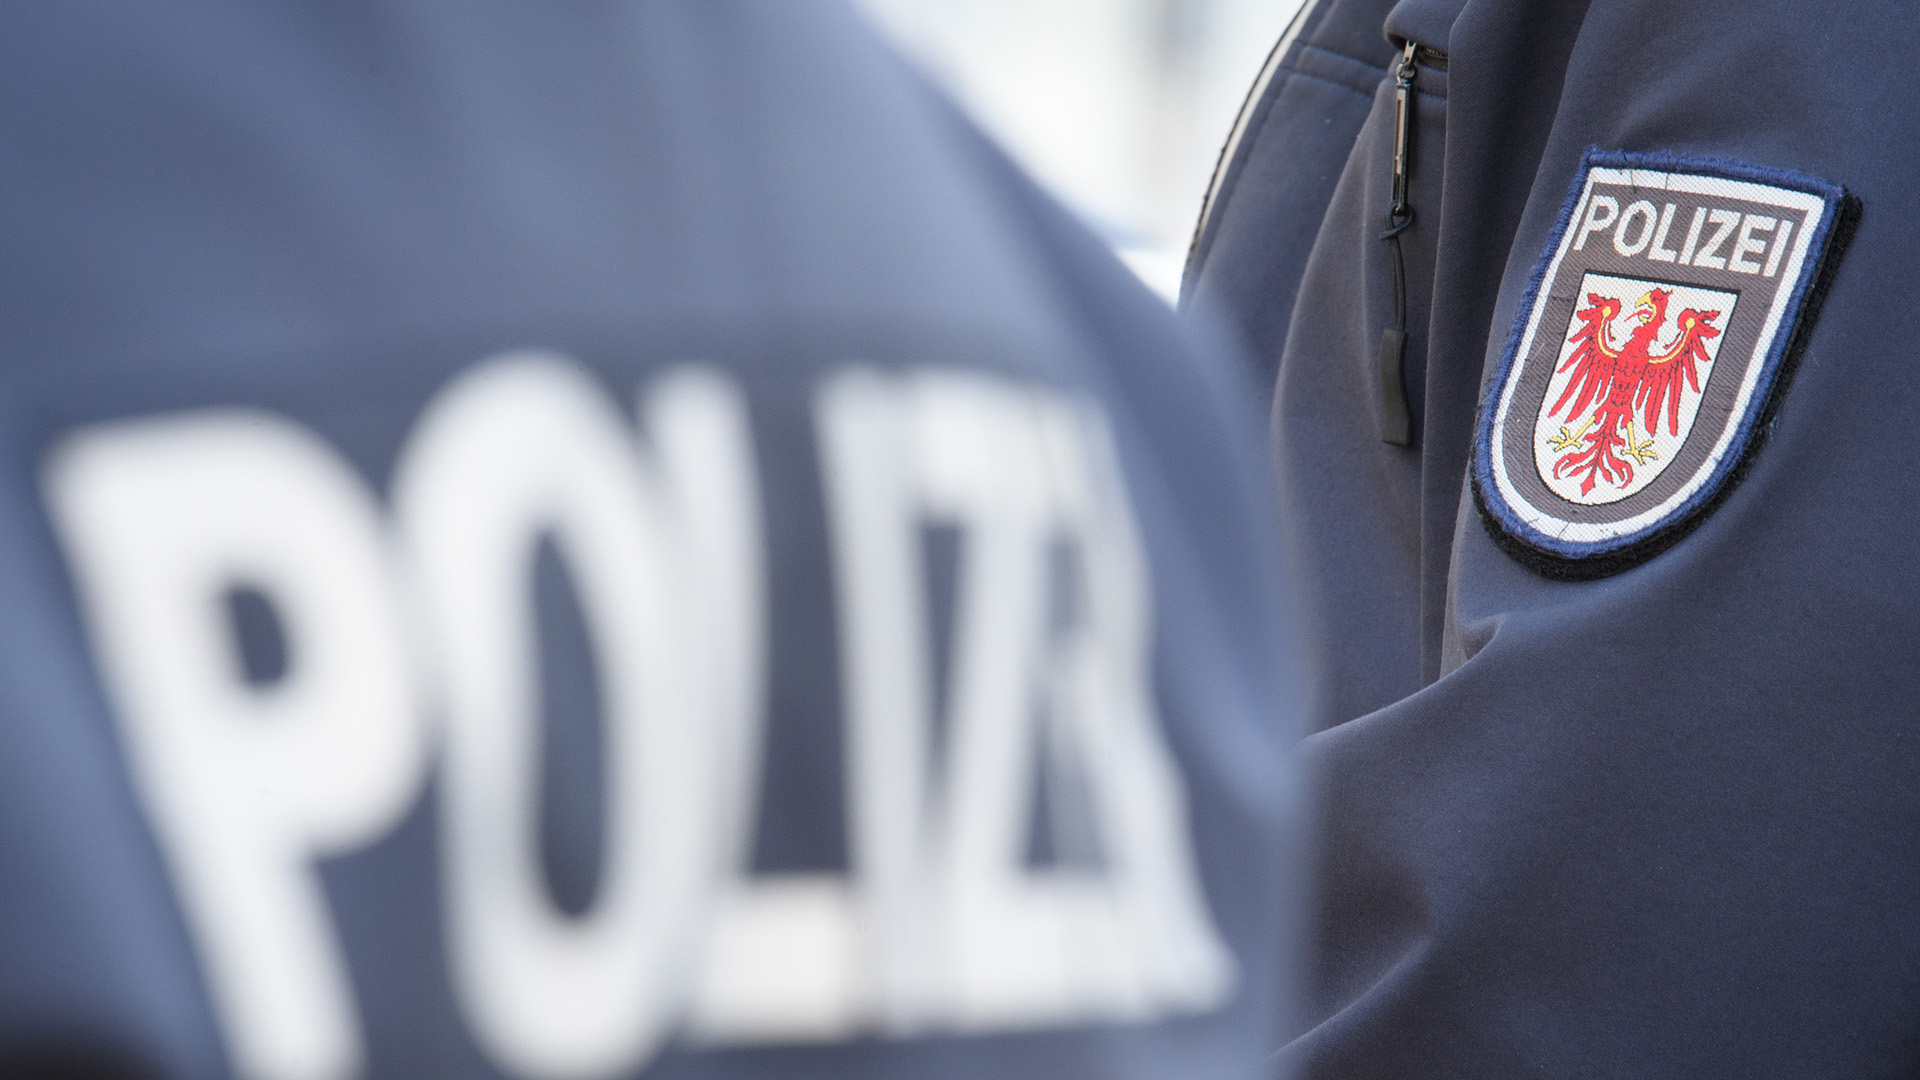 Symbolbild: Das Logo der Brandenburger Polizei mit rotem Adler und Schriftzug auf dem Ärmel der Jacke einer Polizeibeamtin. (Quelle: dpa/Stache)